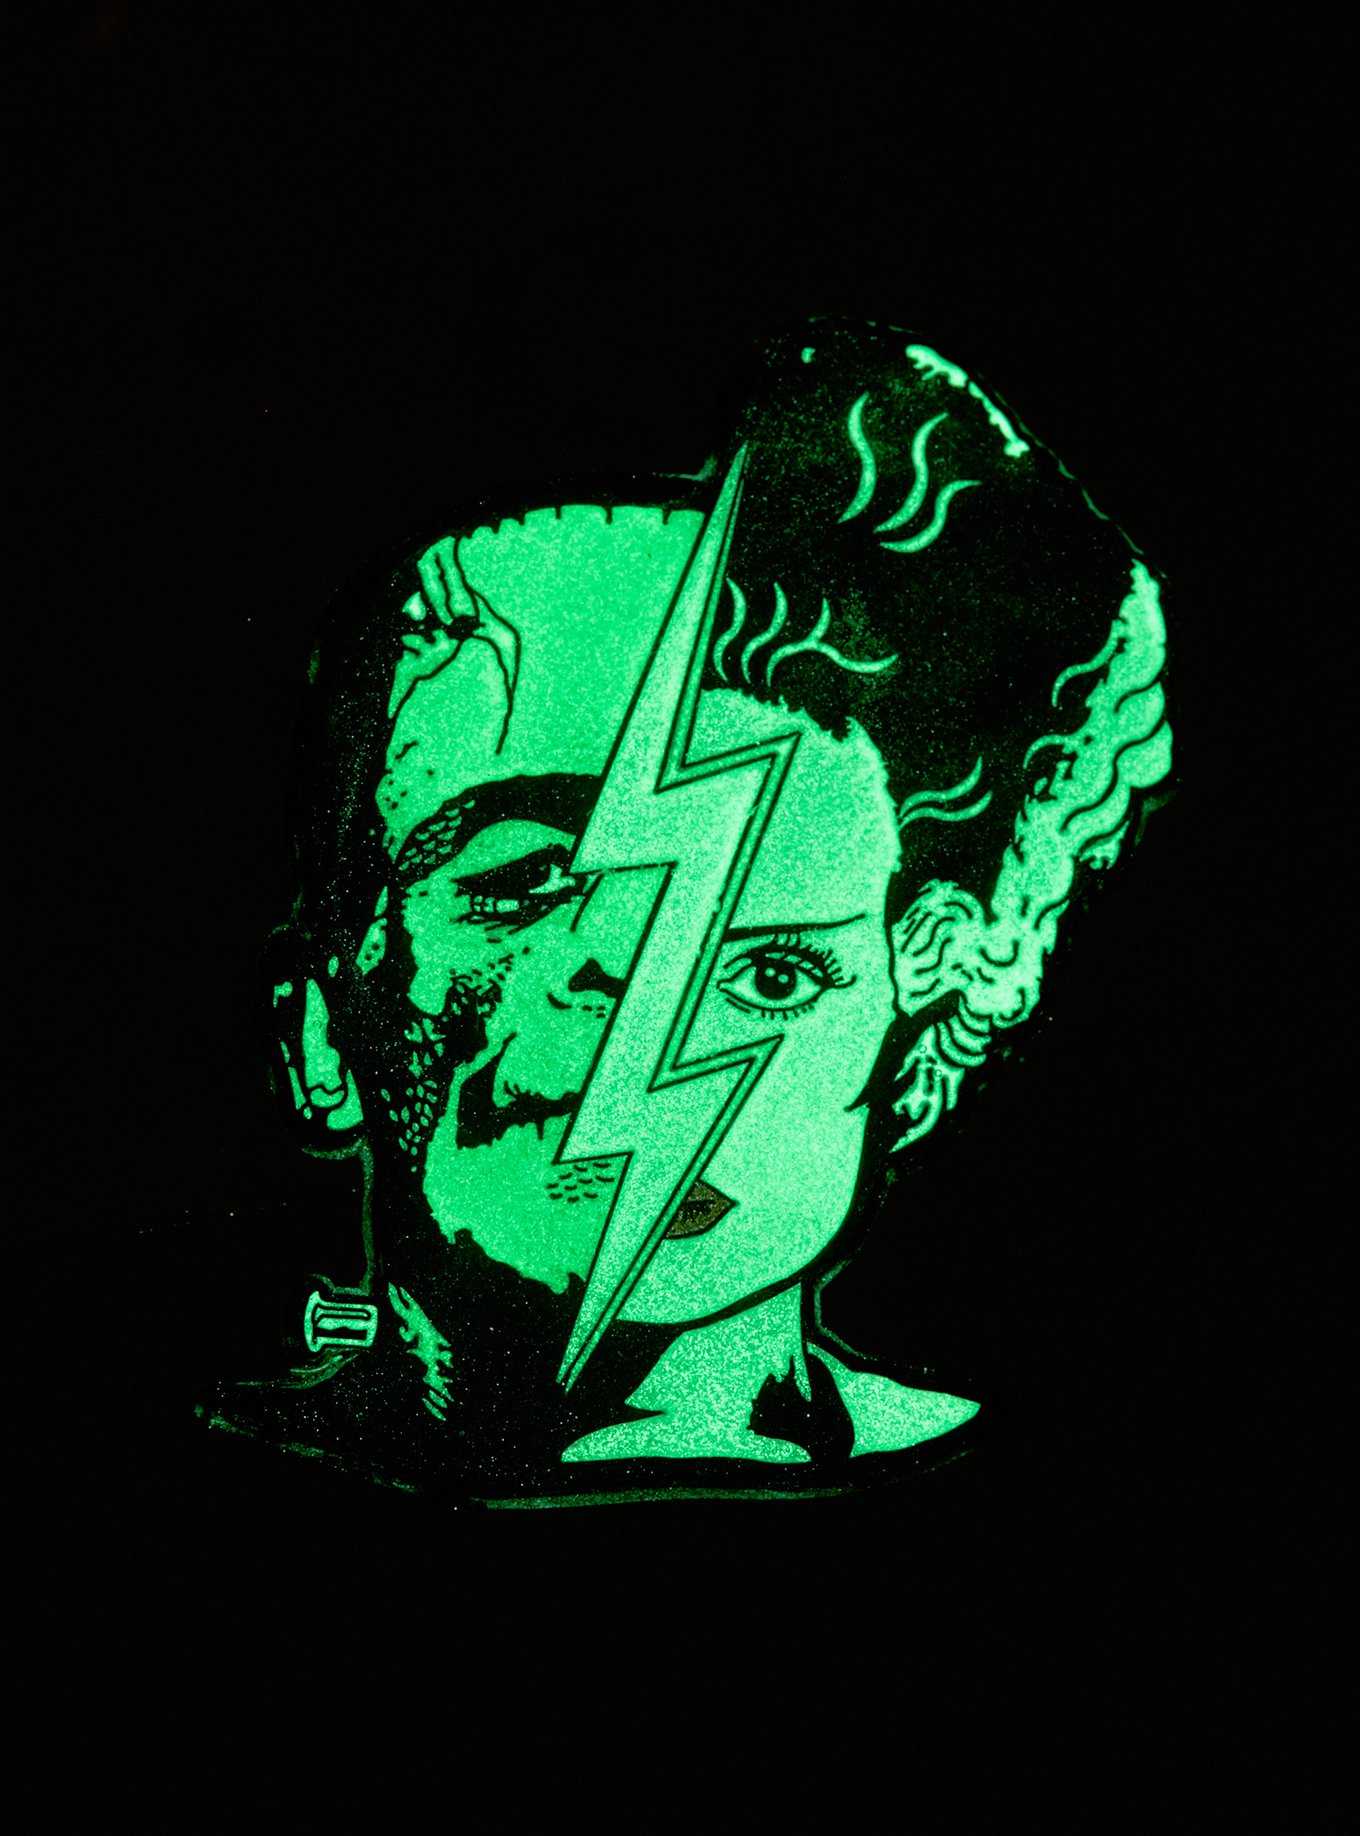 Universal Monsters Frankenstein & Bride Split Glow-In-The-Dark Enamel Pin, , hi-res